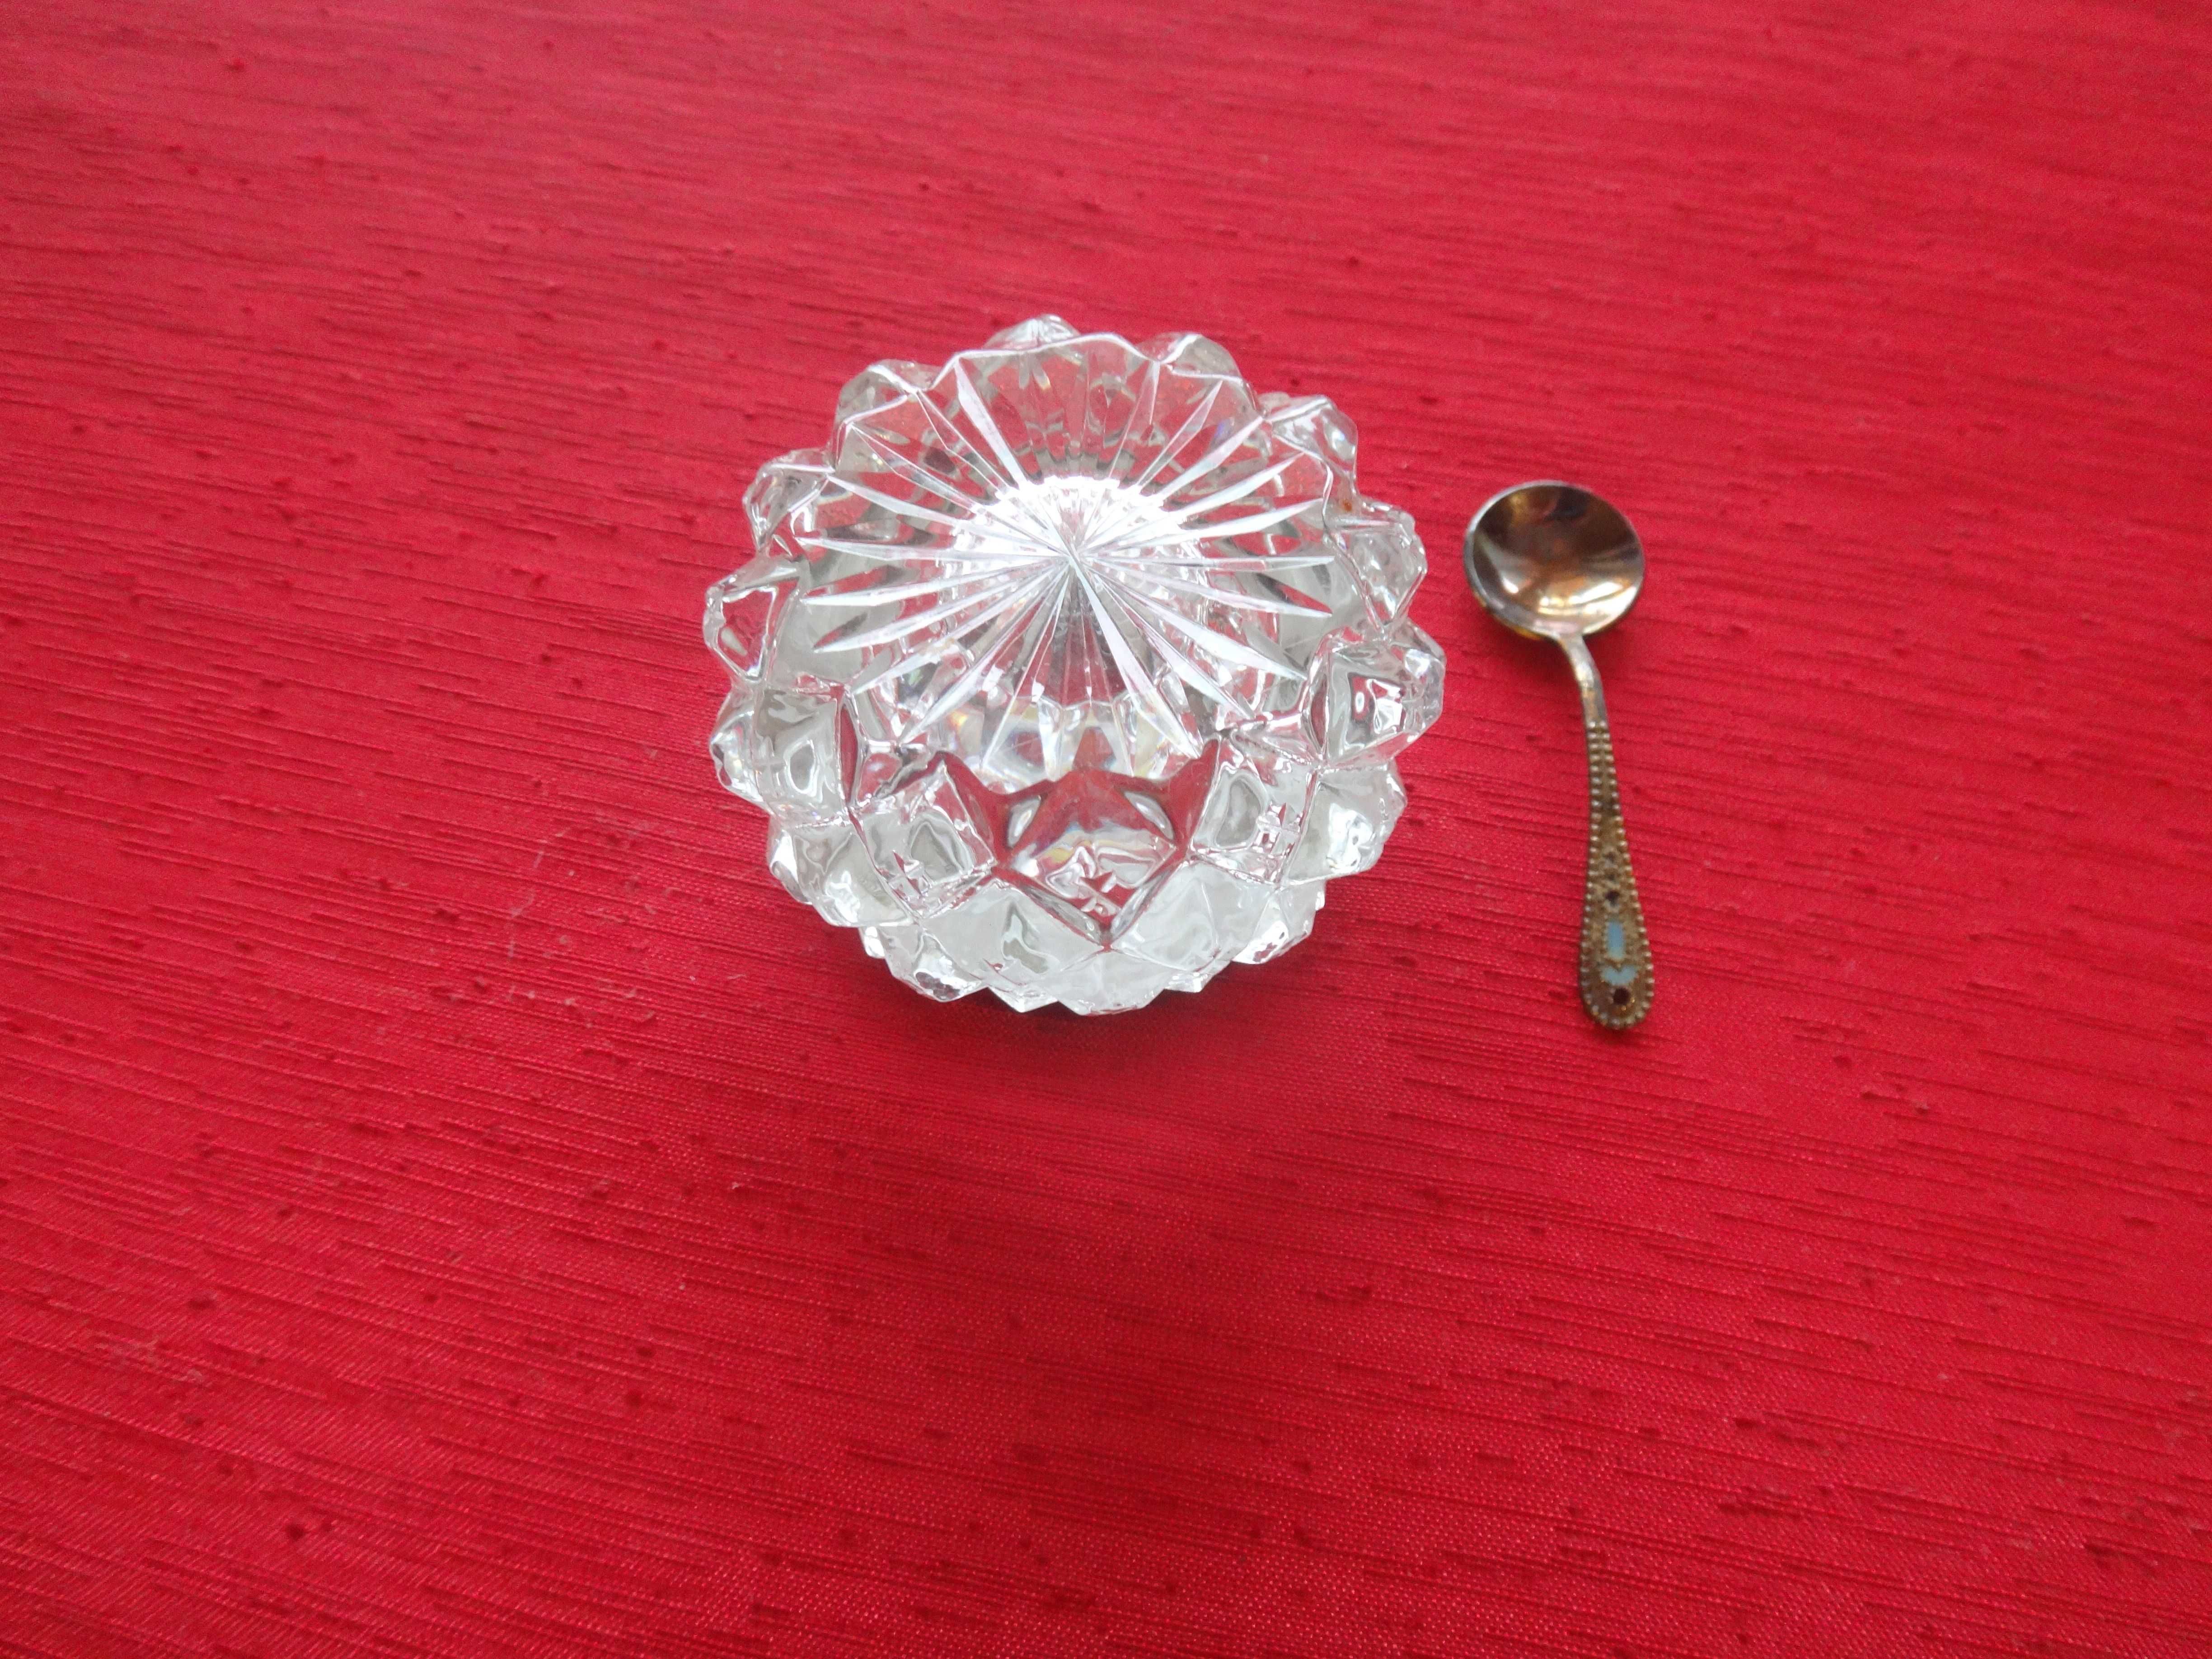 Solniczka kryształowa z łyżeczką w emalii - Rosja - srebro